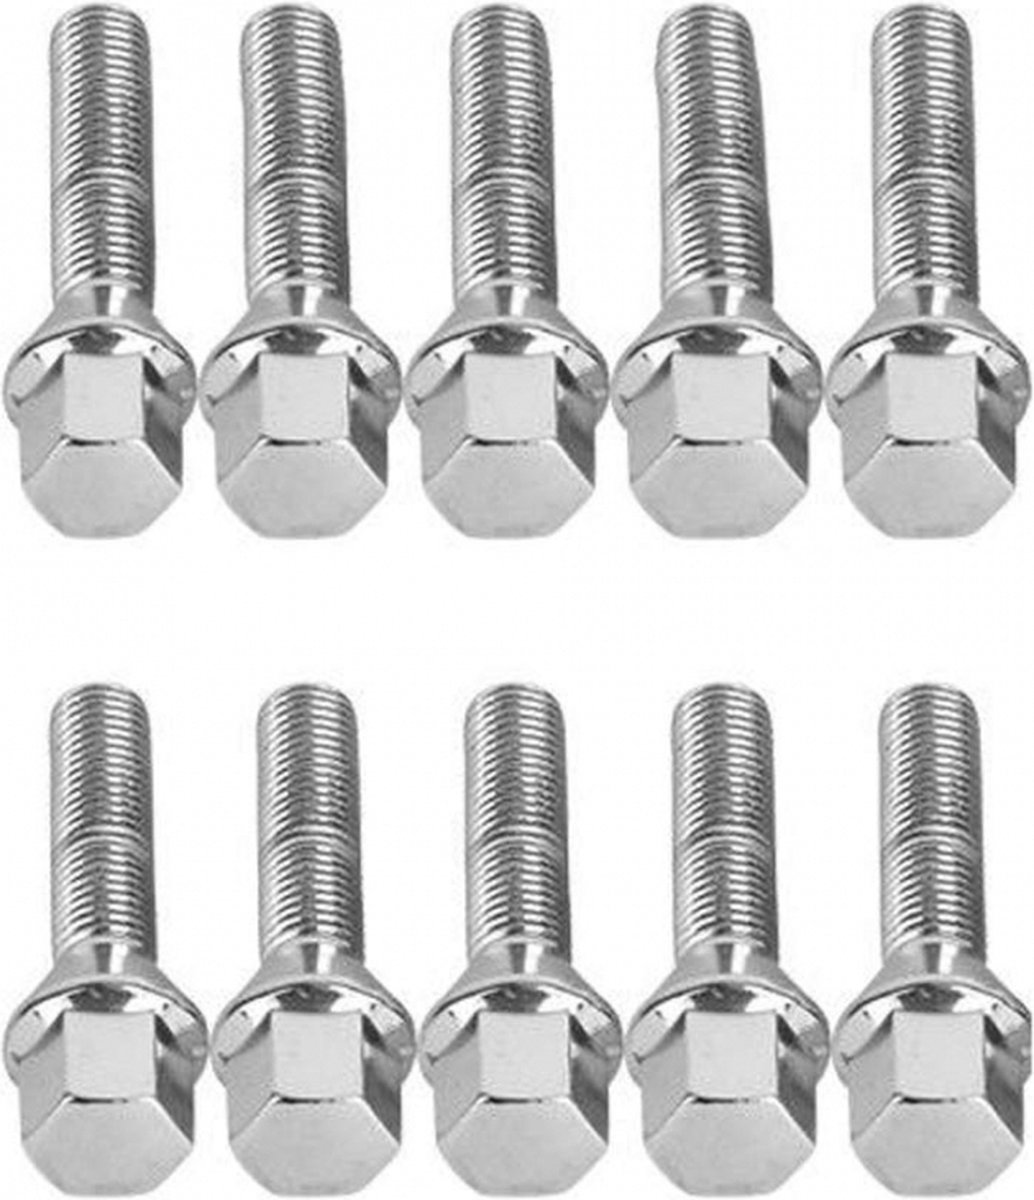 Verlengde conische wielbouten 55mm - M14x1.25 - Chroom - Set van 10 bouten / M14x1,25 / M14 x 1,25 / M14 x 1.25